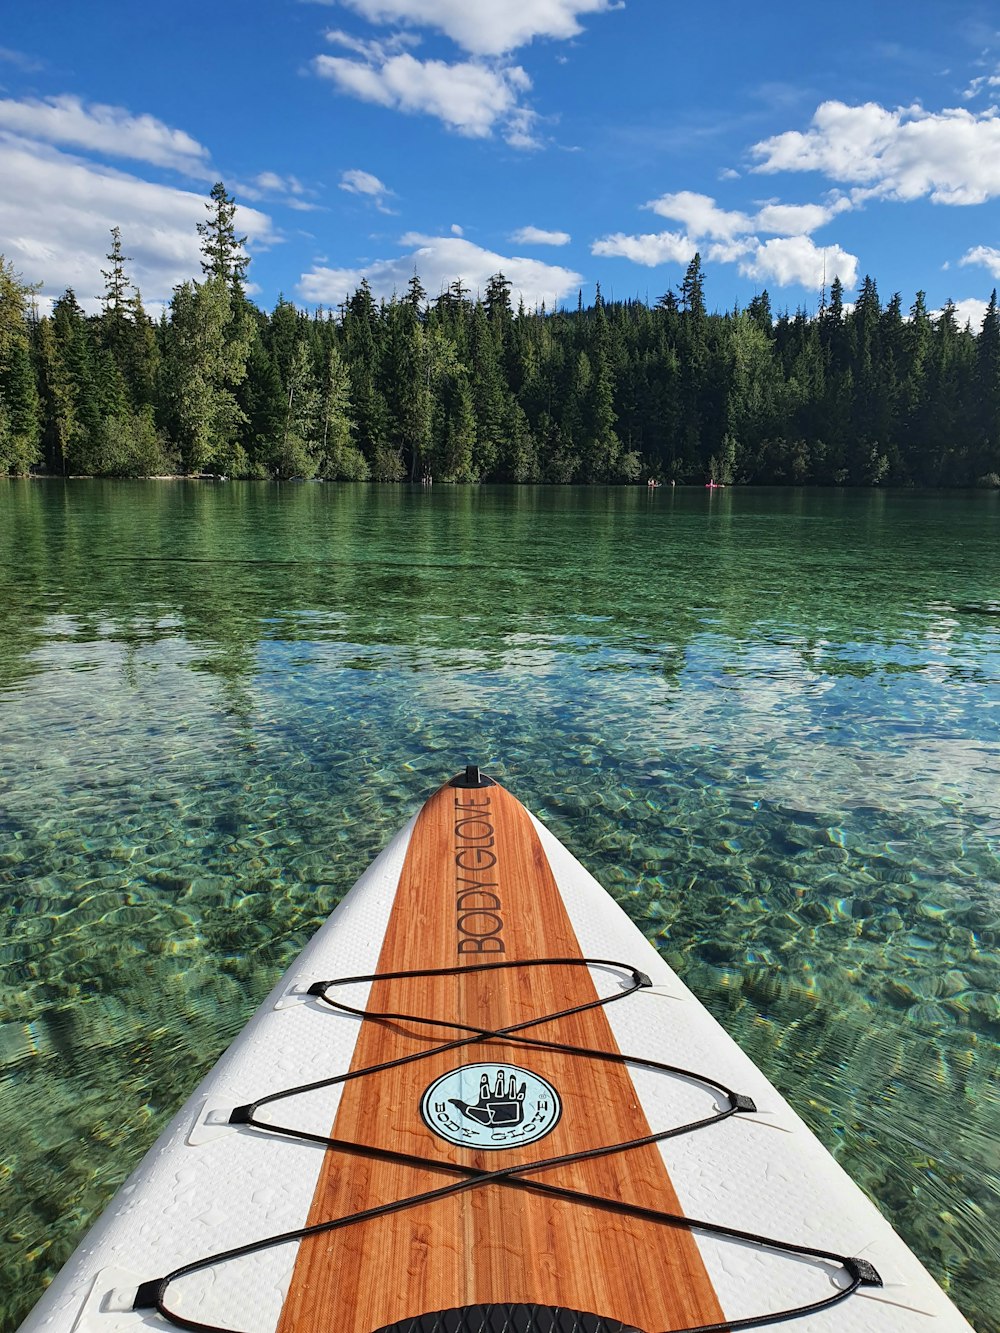 brown kayak on green lake near green trees during daytime